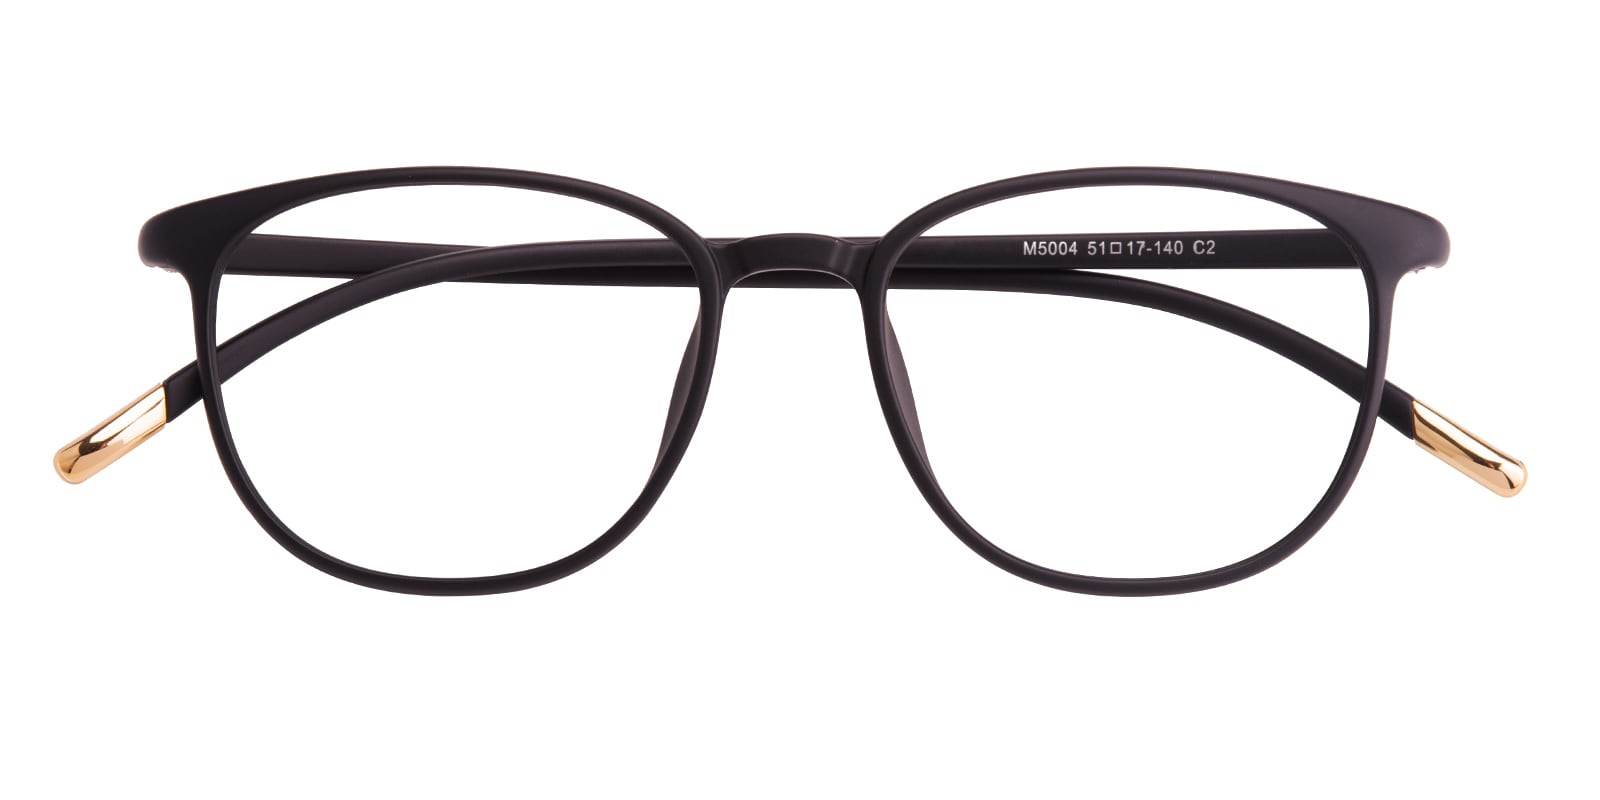 Oval|Classic Wayframe Eyeglasses, Full Frame Mblack Ultem - FP1567